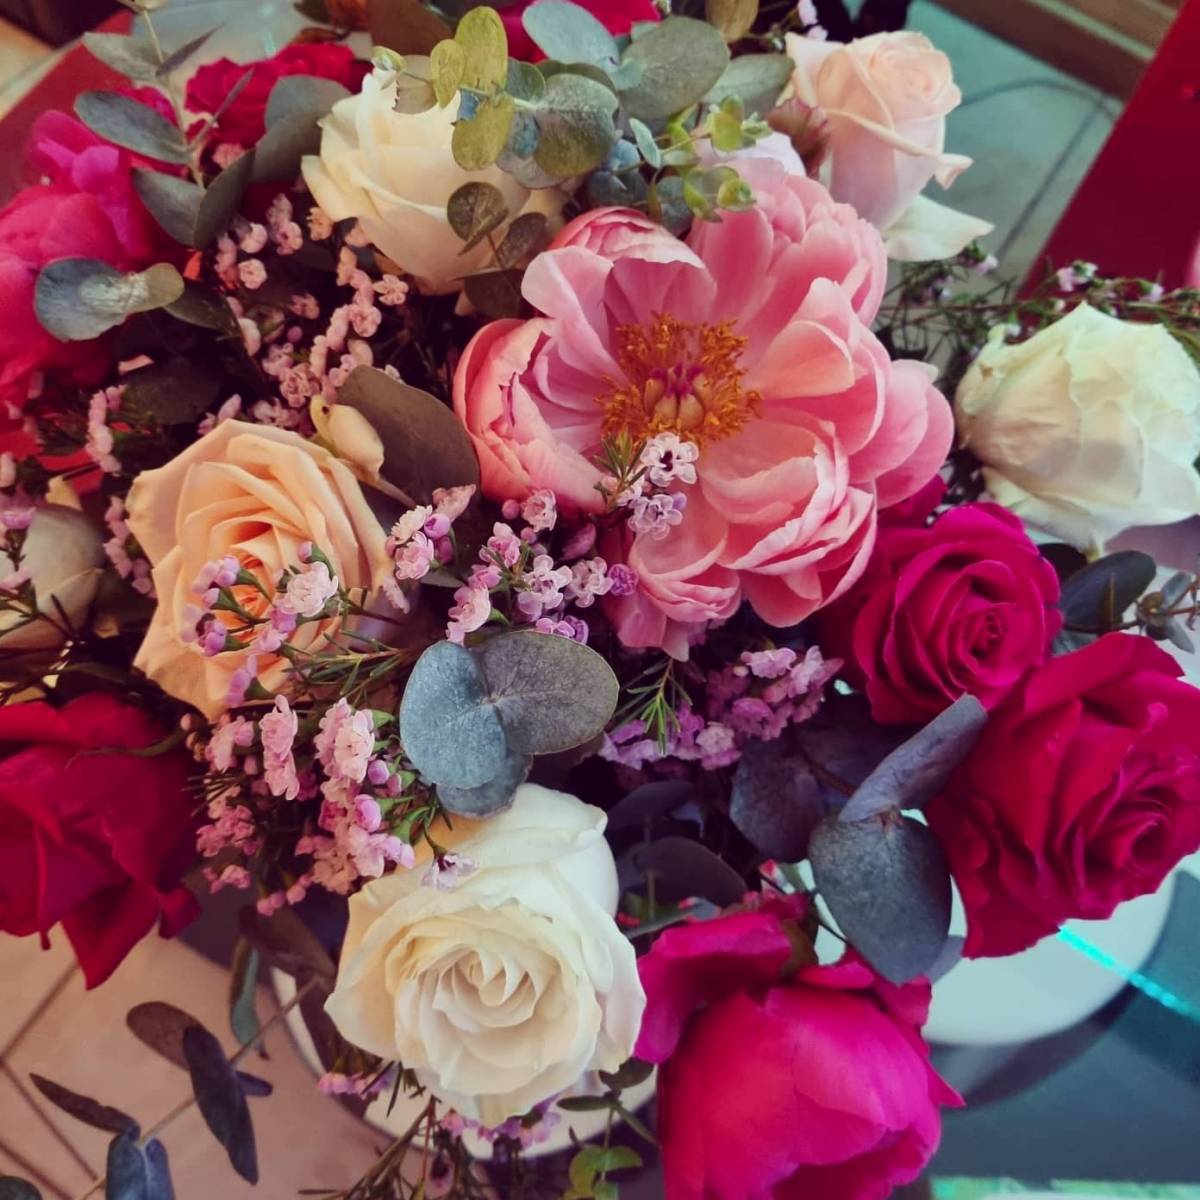 Créations de bouquets florales personnalisés pour particuliers et professionnels par un artisan fleuriste à Venelles à côté d’Aix en Provence